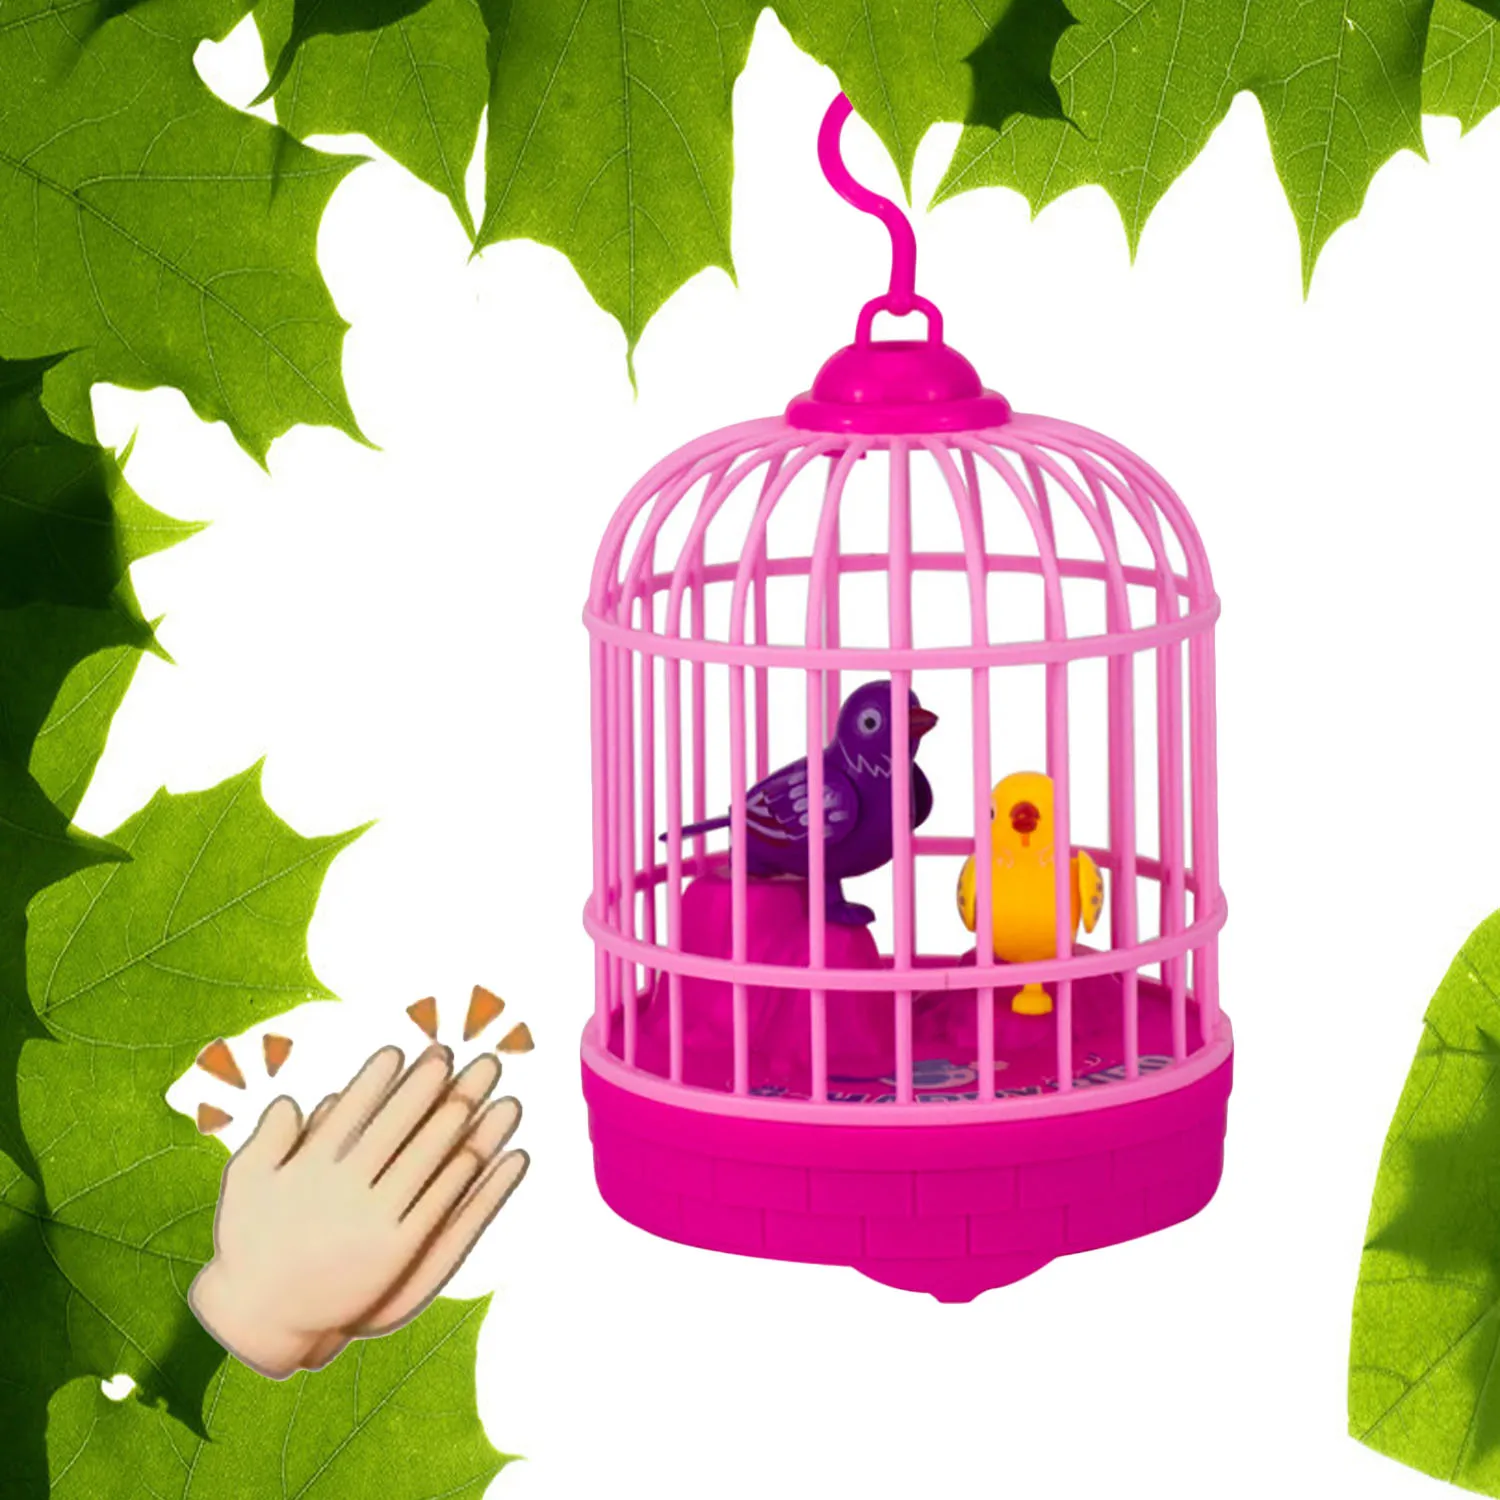 Звуковой с голосовым управлением активировать чирпинг пение Имитационные птицы с птичья клетка дети забавные игрушки розовый